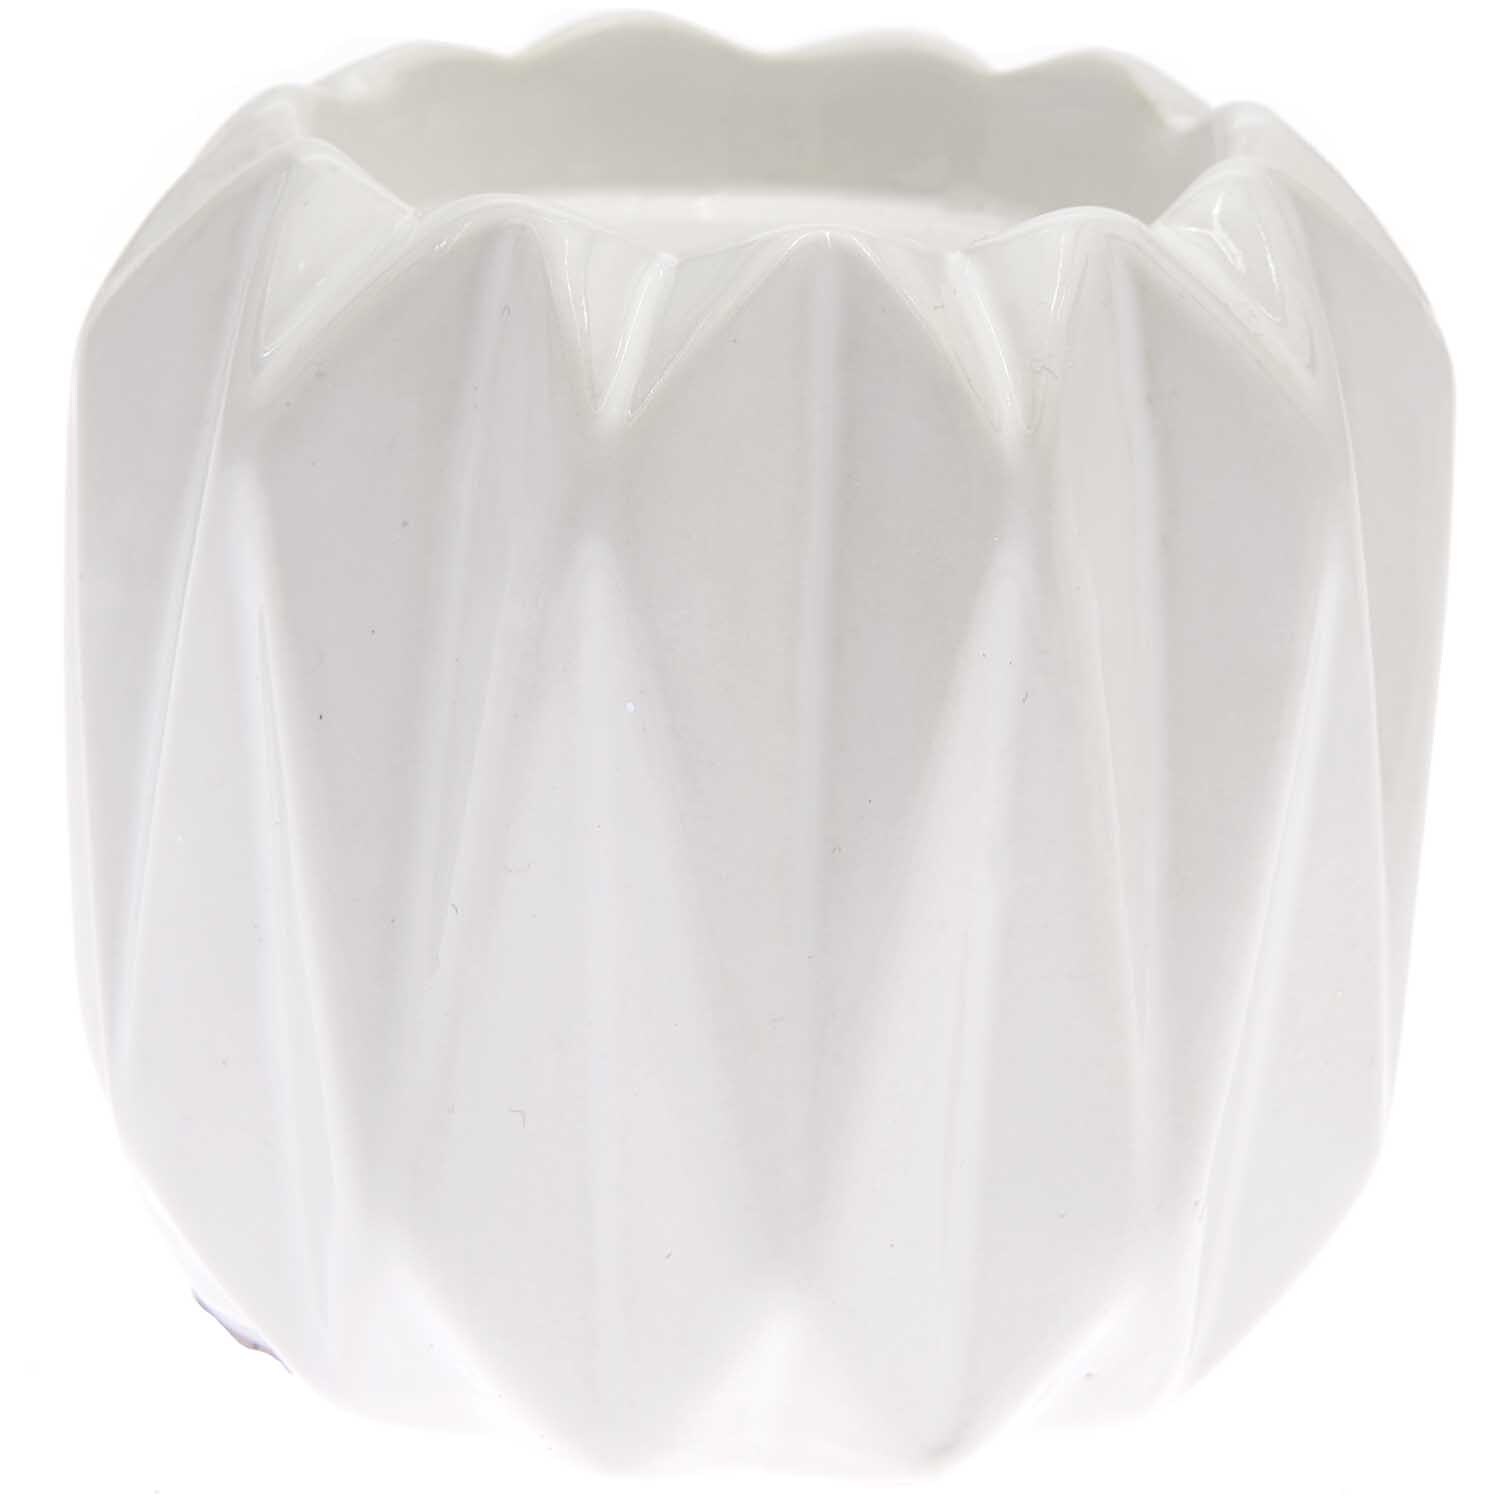 Porzellan-Teelichthalter weiß 8x8x8cm